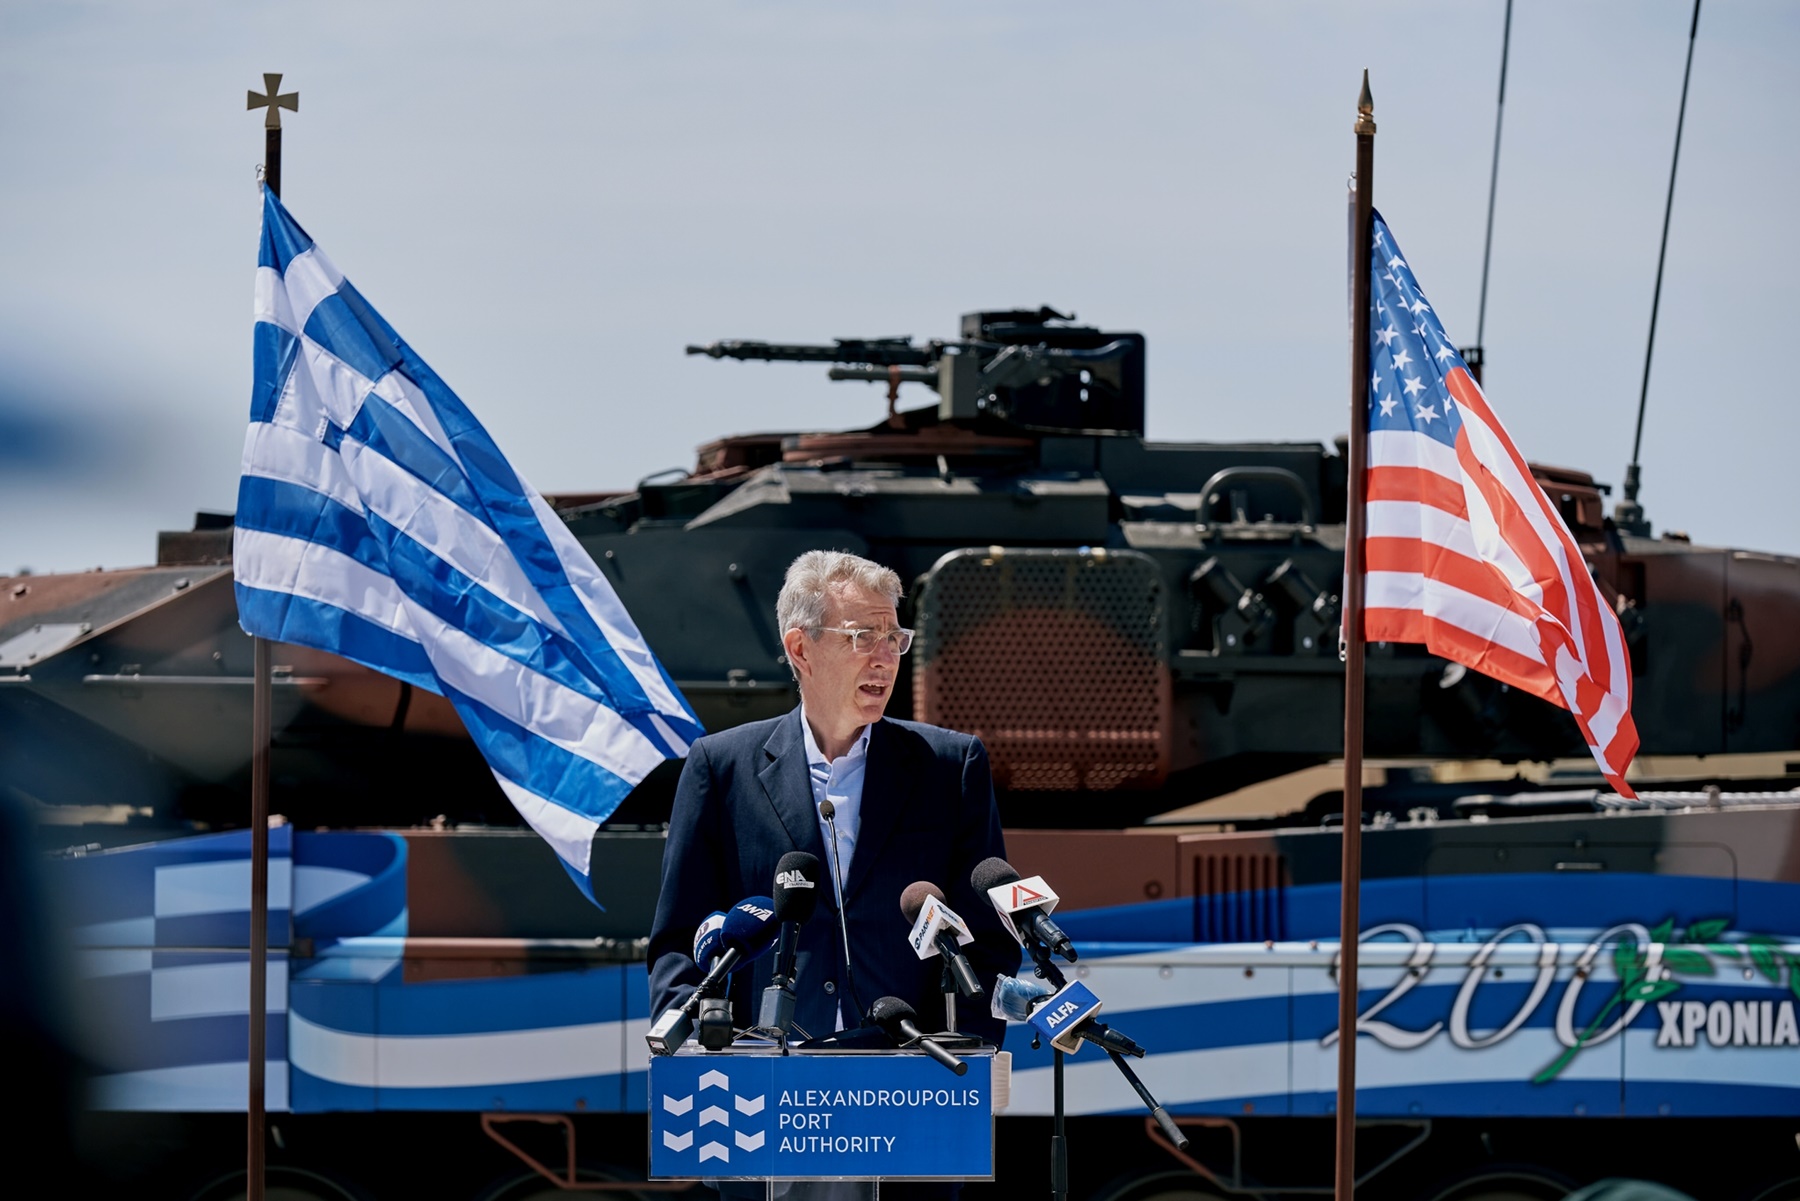 Ελλάδα – ΗΠΑ σχέσεις: «Ο Μπάιντεν θέλει να ανέβουν επίπεδο»